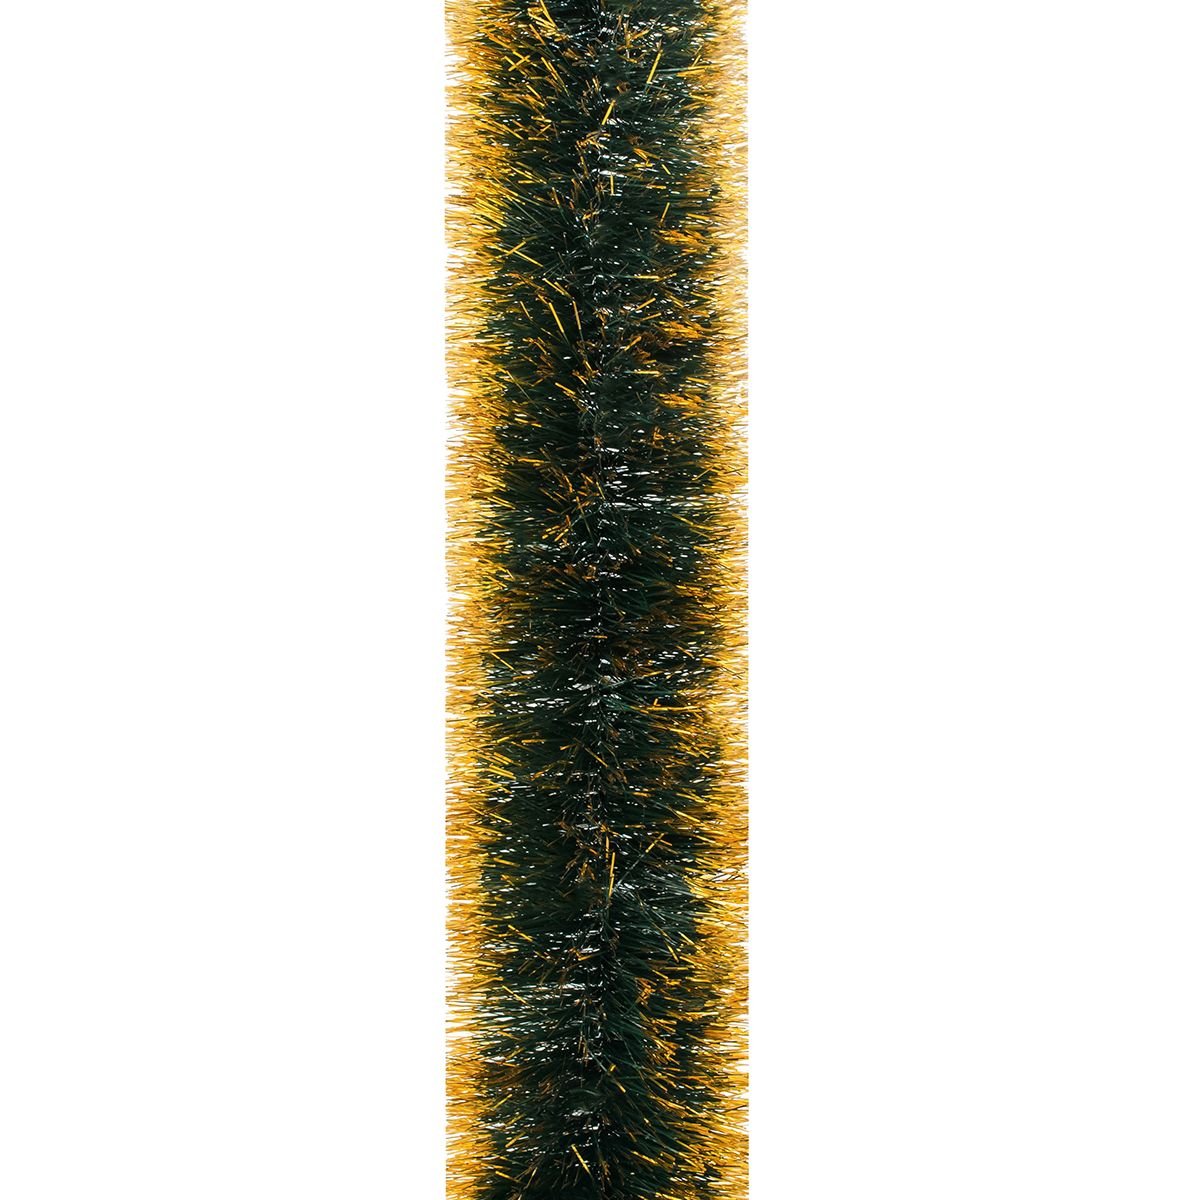 Мішура Novogod'ko 10 см 3 м зелена матова з золотими кінчиками (980322) - фото 1